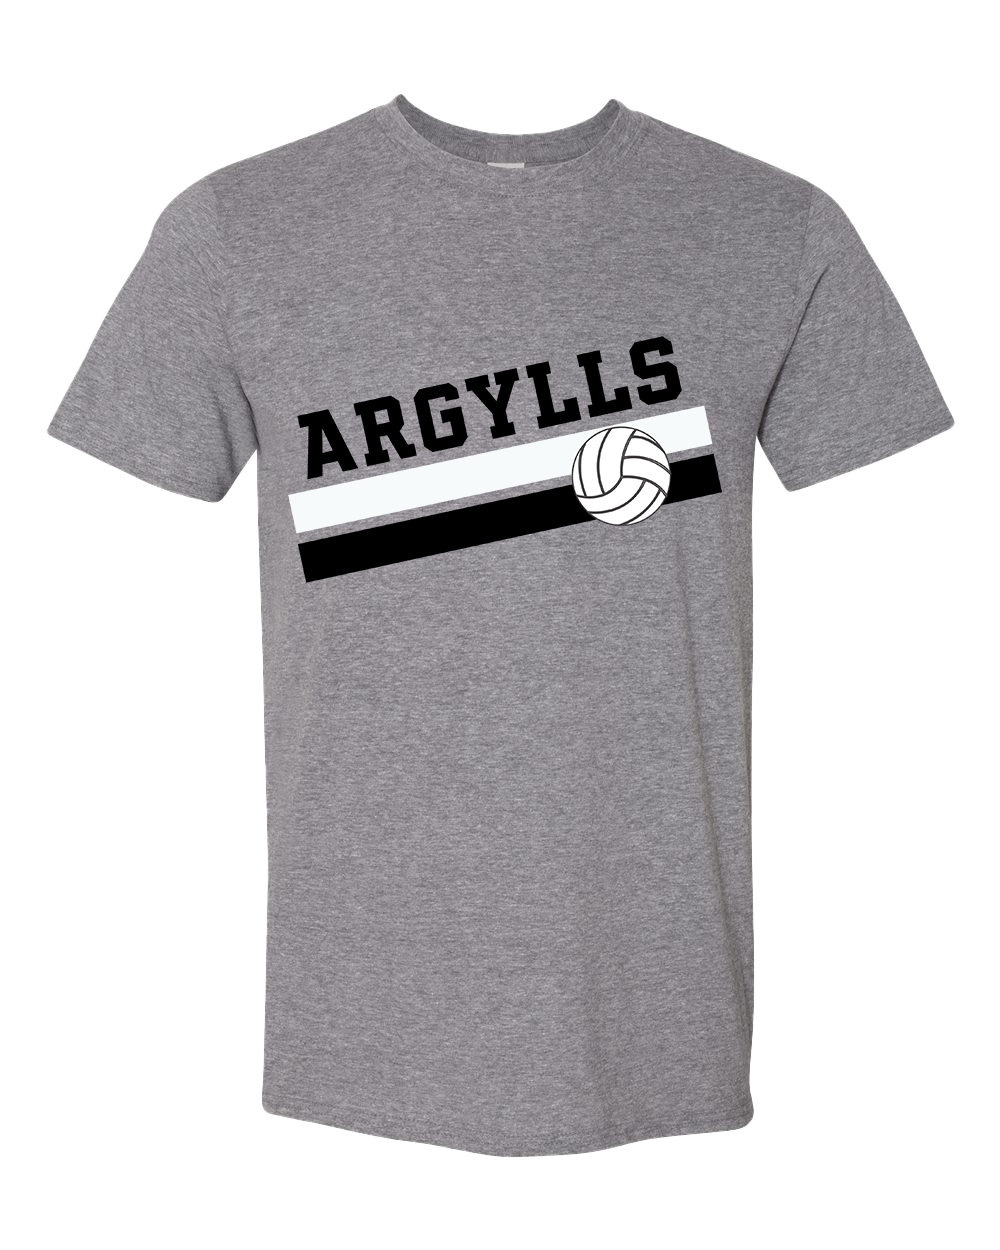 Argylls Volleyball Championship Tshirt - Graphite Heather